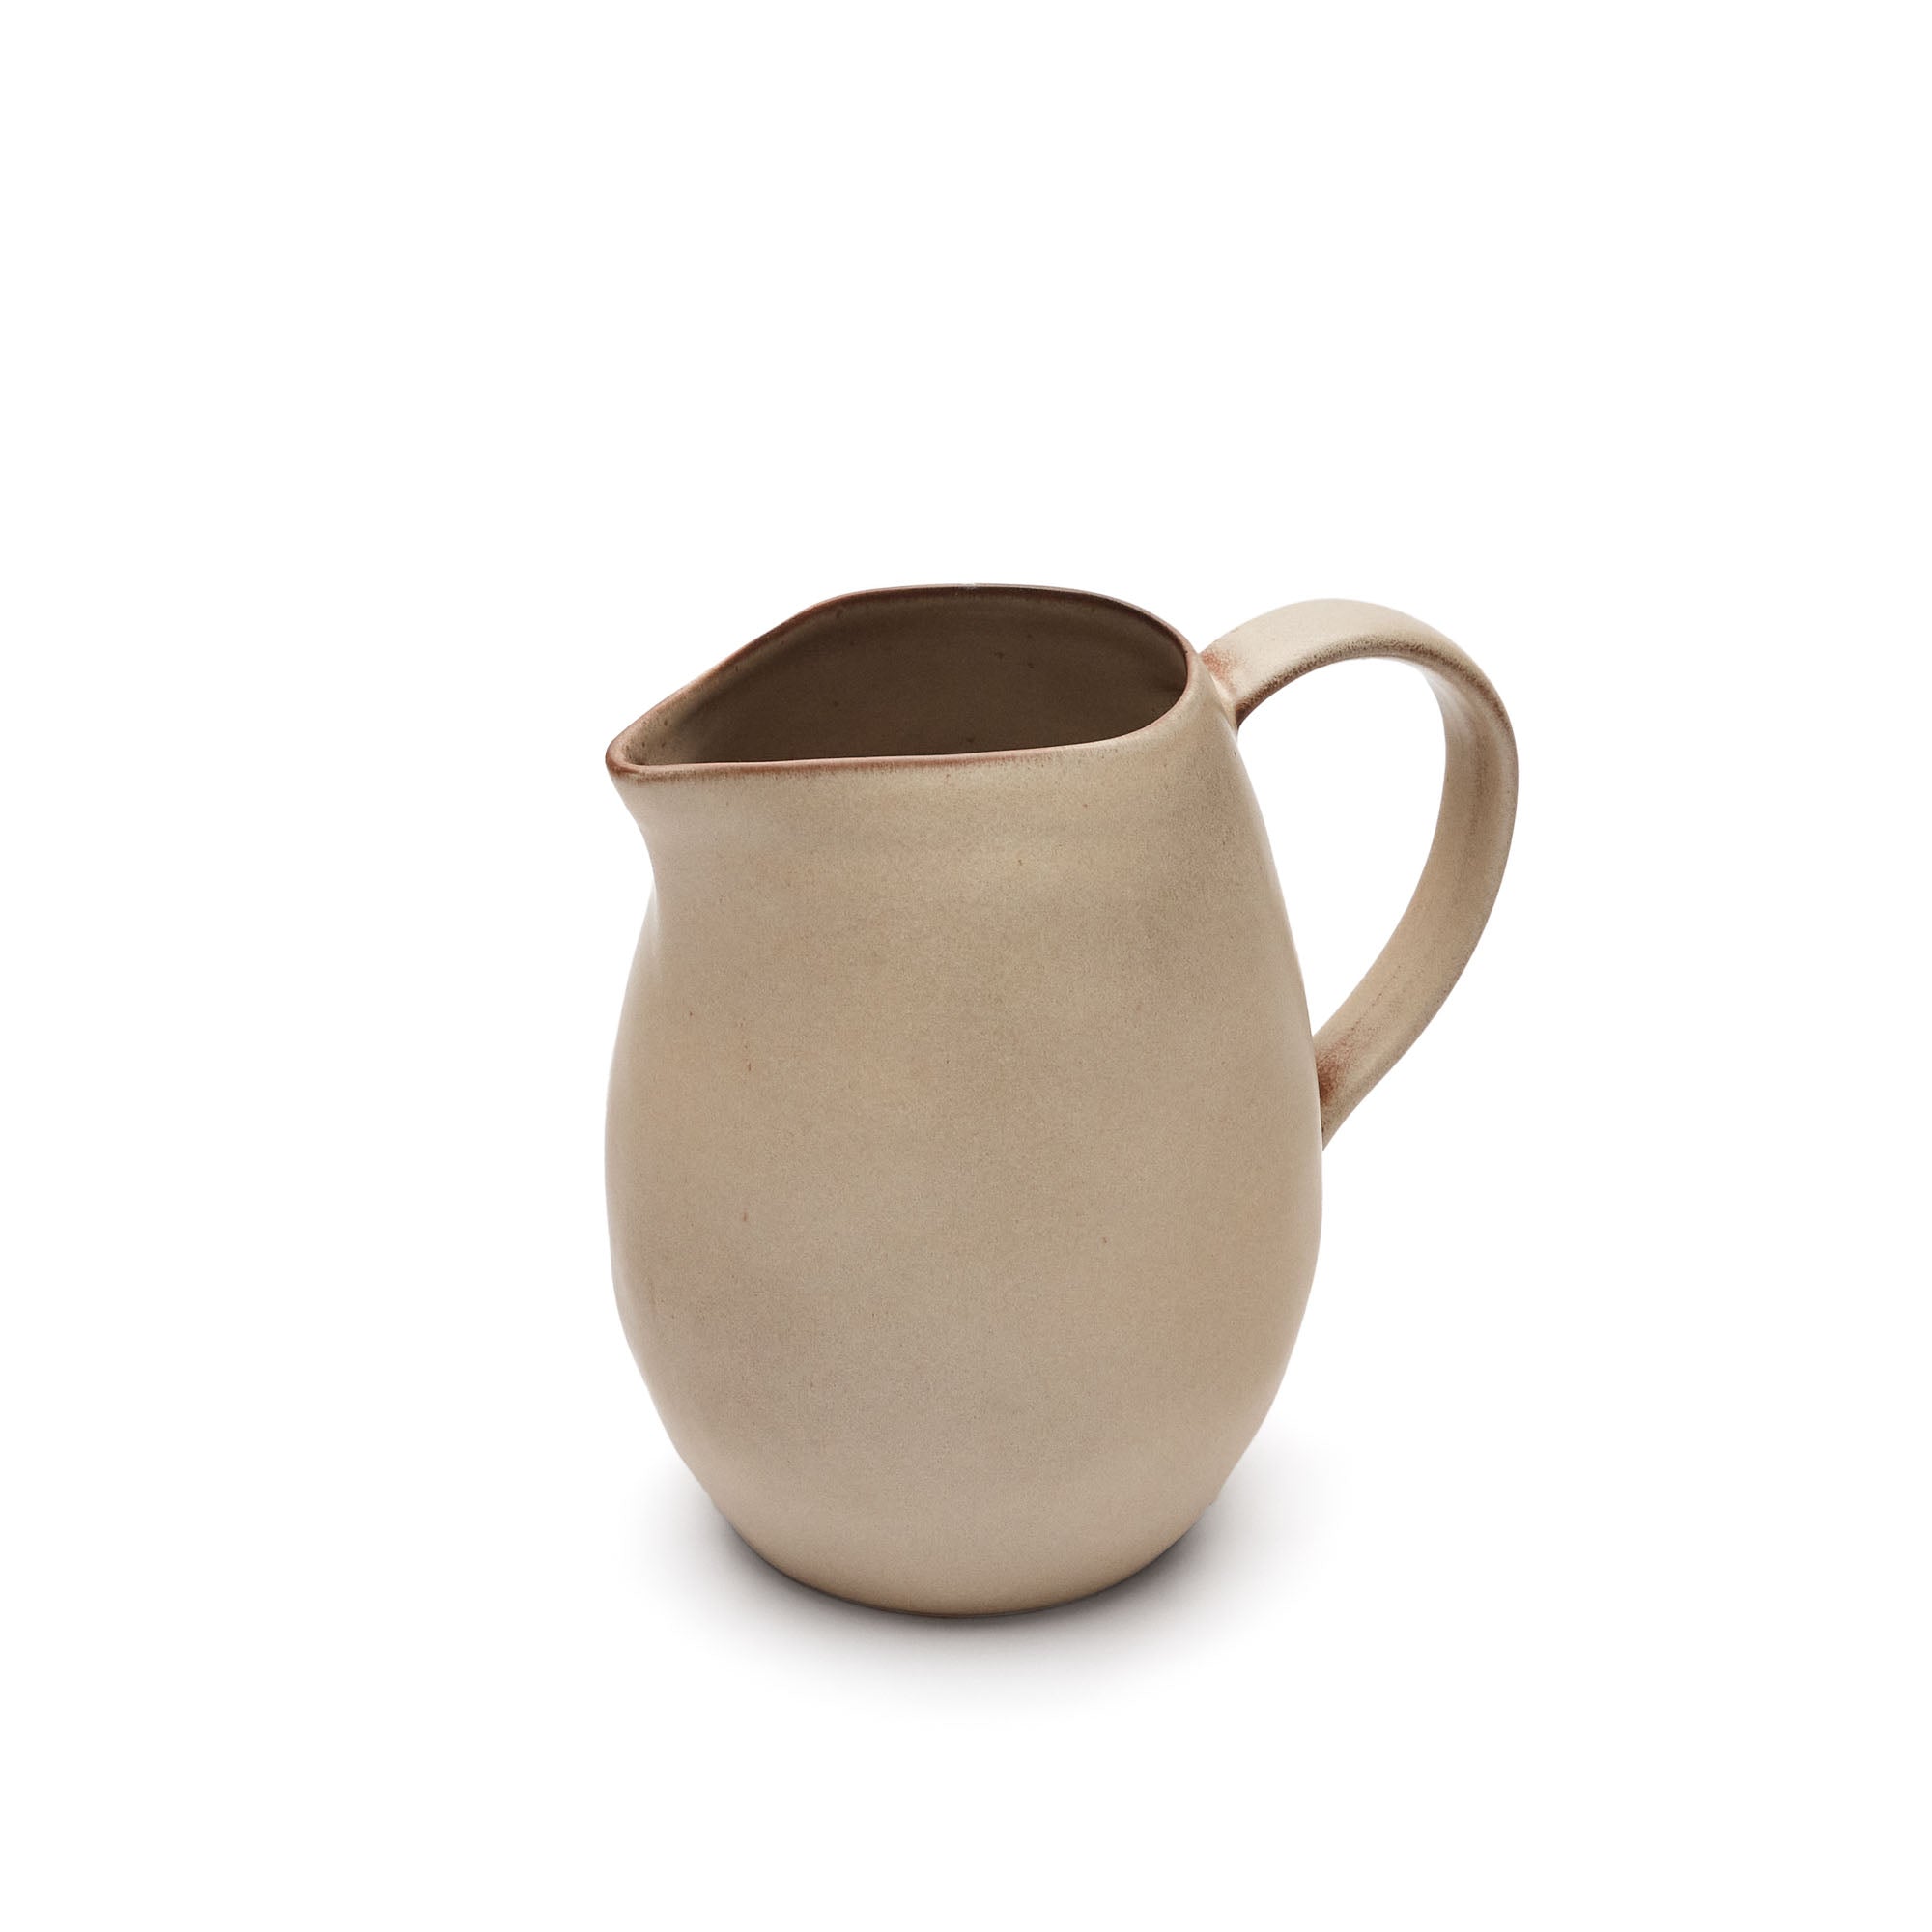 Banyoles ceramic jug in brown